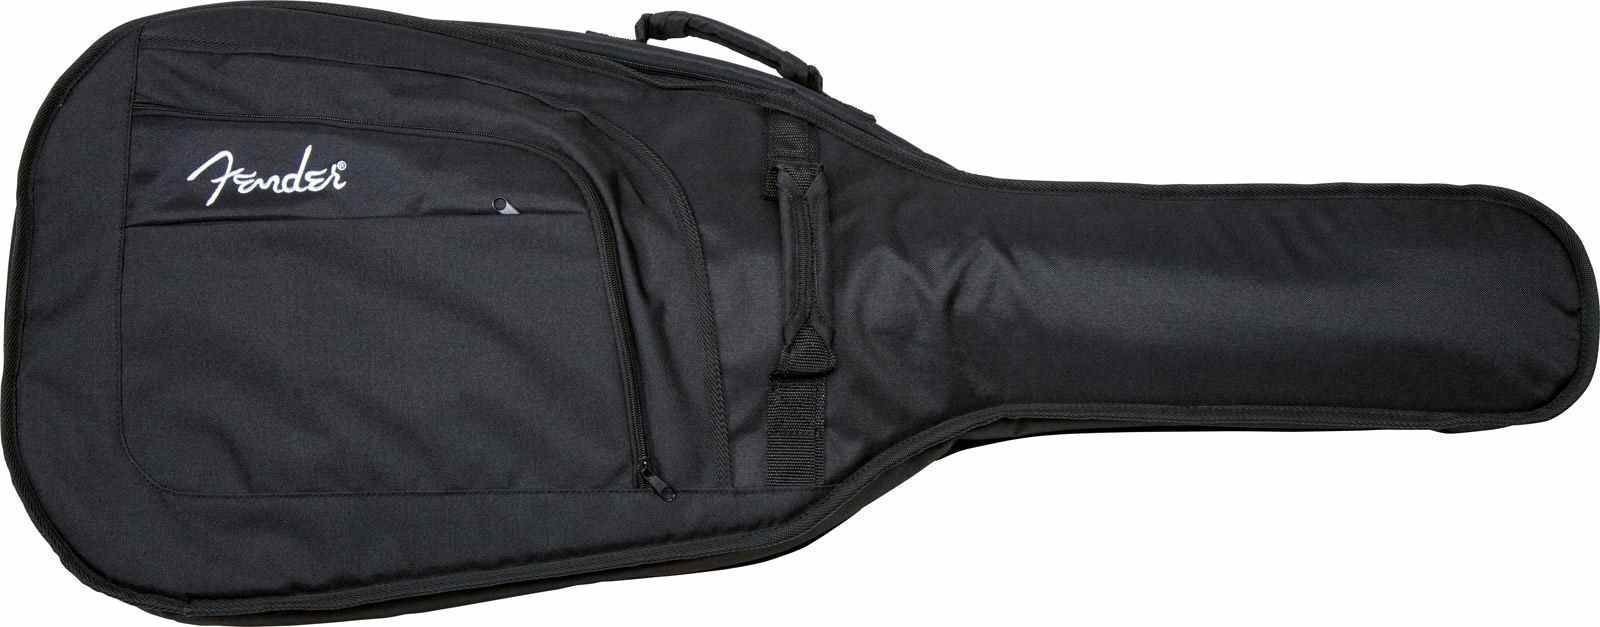 Tasche für akustische Gitarre, Gigbag für akustische Gitarre Fender Urban Dreadnought Gig Bag